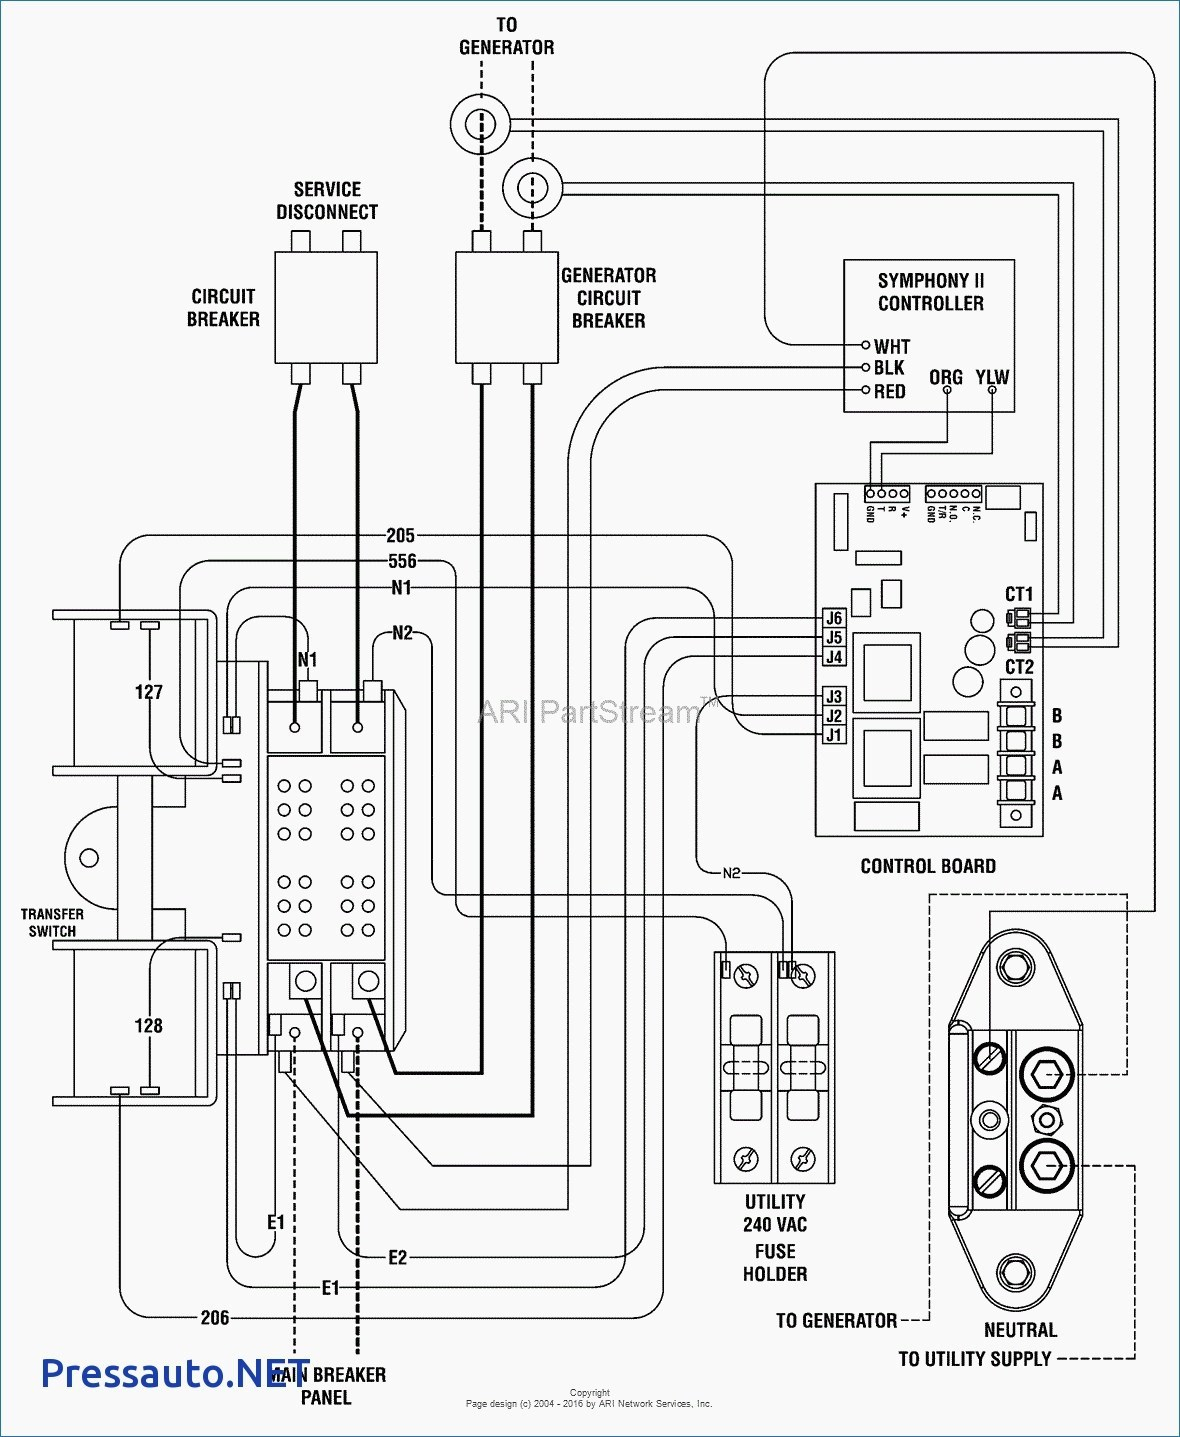 Diagram Auto Manual Switch Wiring Diagram Full Version Hd Quality Wiring Diagram Electricae Handycie Fr